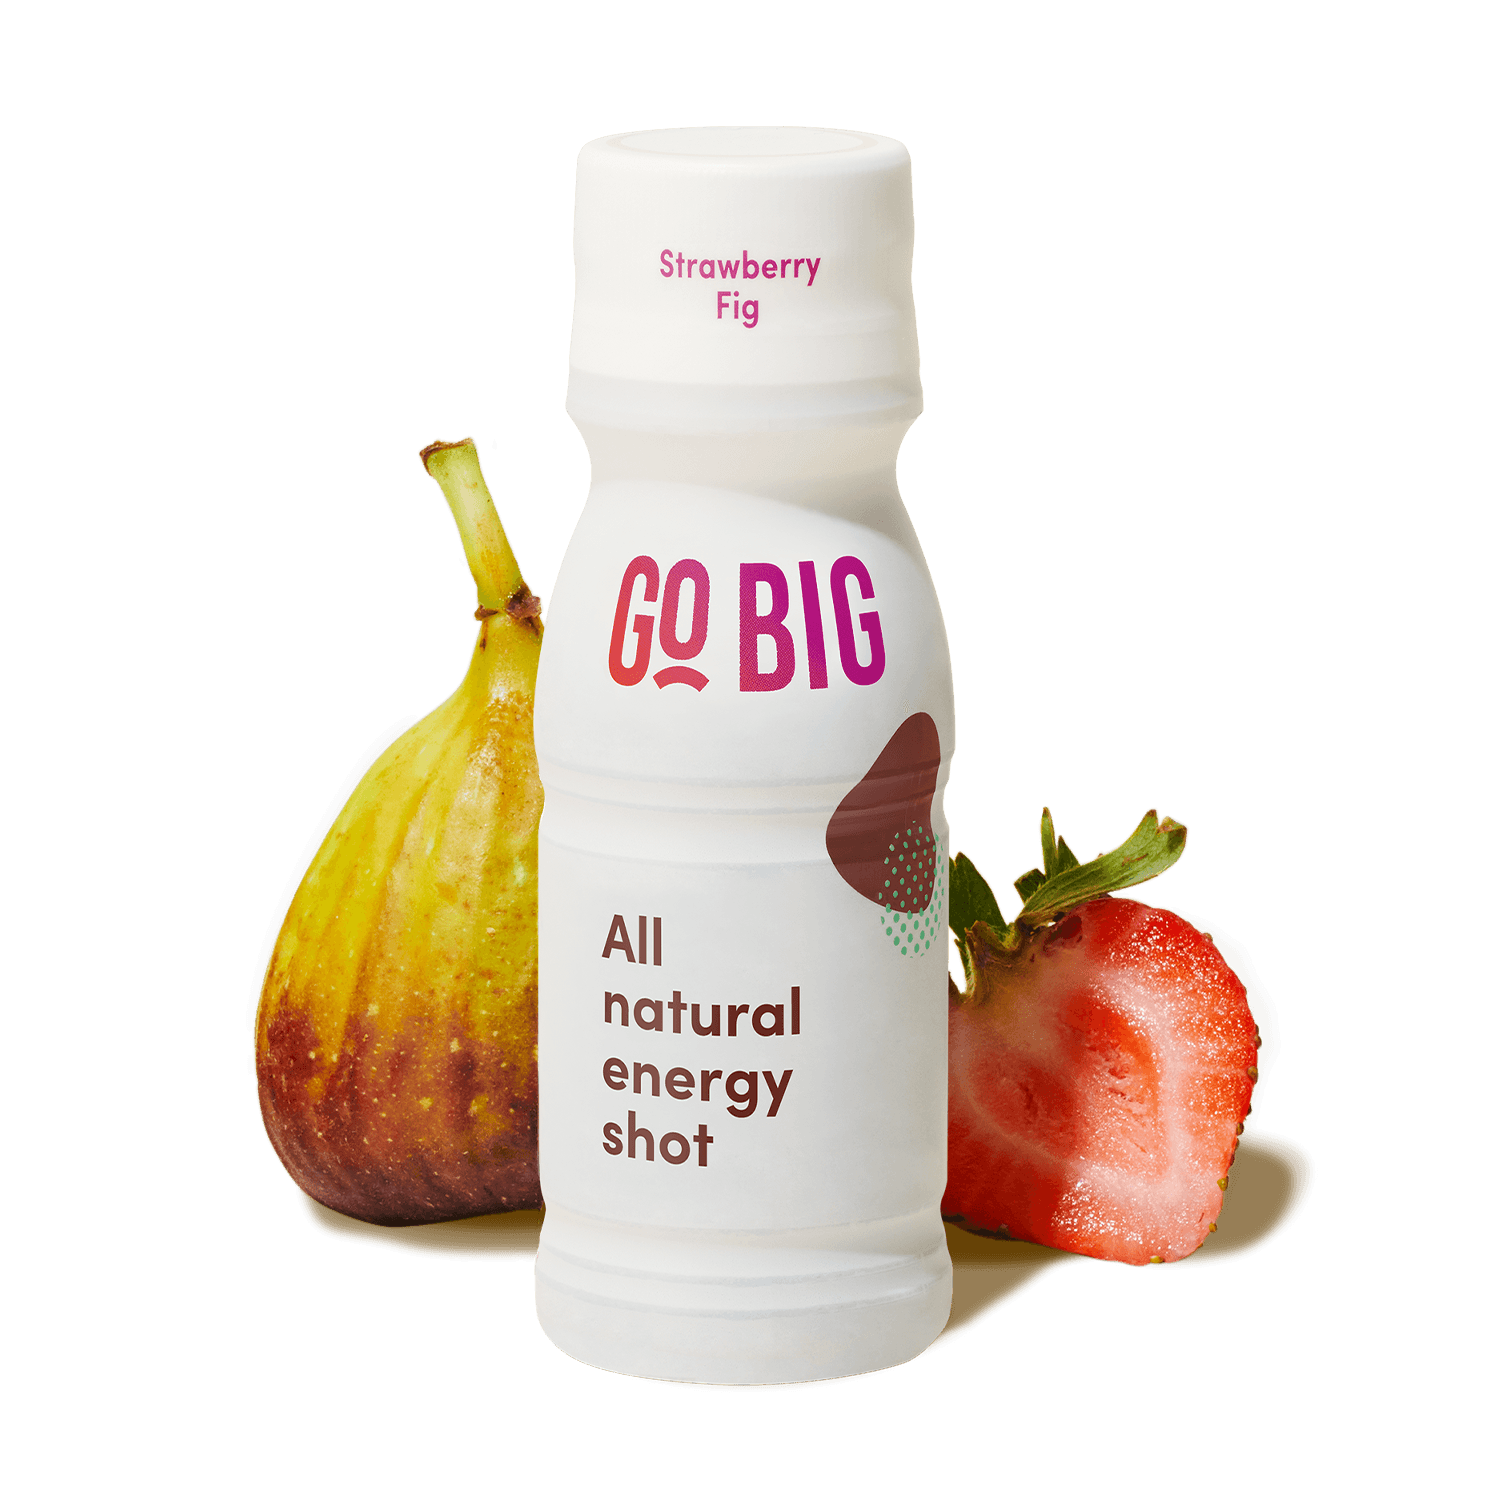 GO BIG strawberry fig energy shot